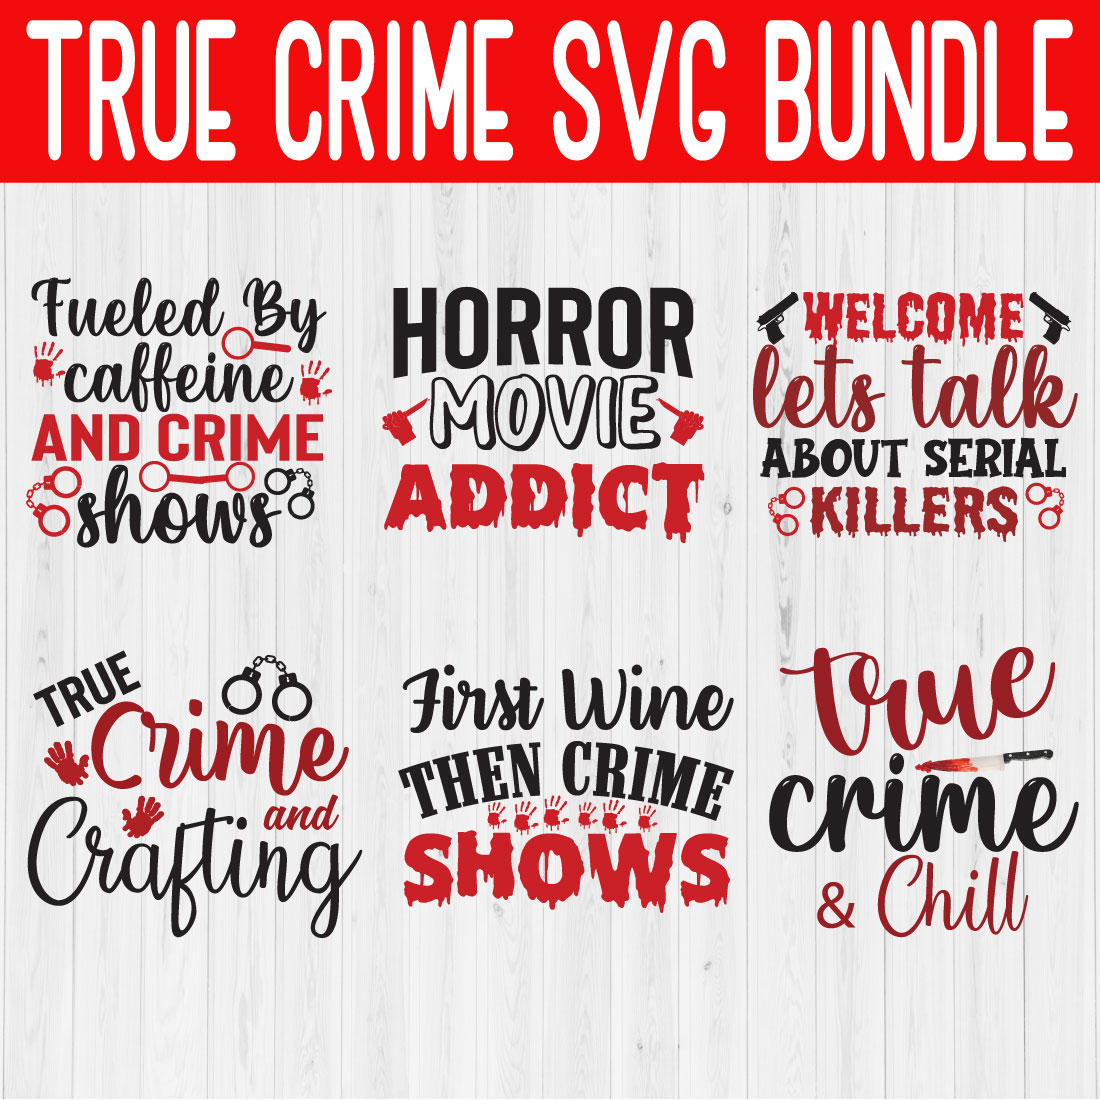 True Crime Svg Quote Bundle Vol3 cover image.